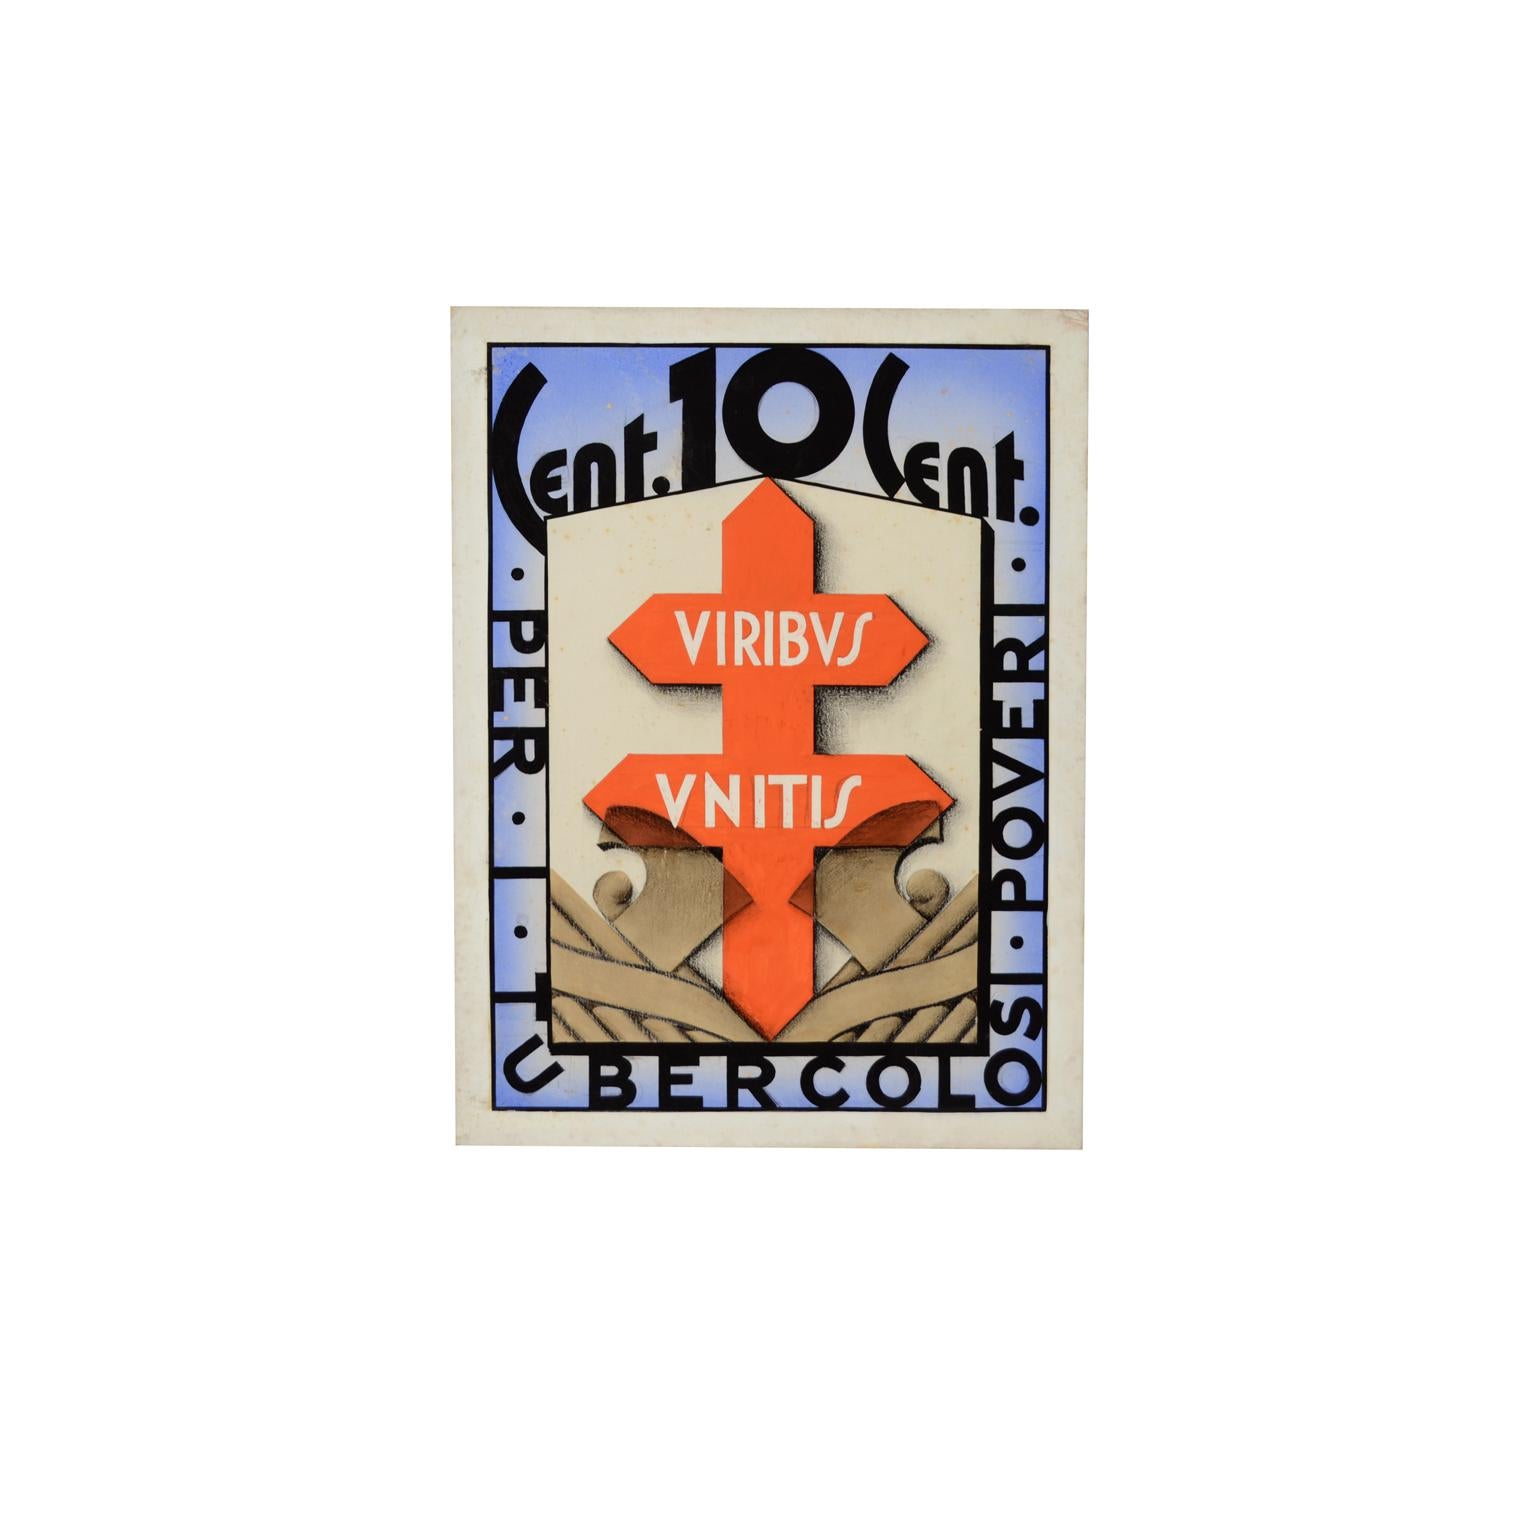 Skizze eines futuristischen Plakats, 1930er Jahre, Kampagne gegen Tuberkulose mit vereinten Kräften 10 Cent für arme Tuberkulosekranke, für die nationale Kampagne zur Aufklärung über die Prävention dieser Krankheit. Maße: cm 32 x 42, Zoll 12,61 x